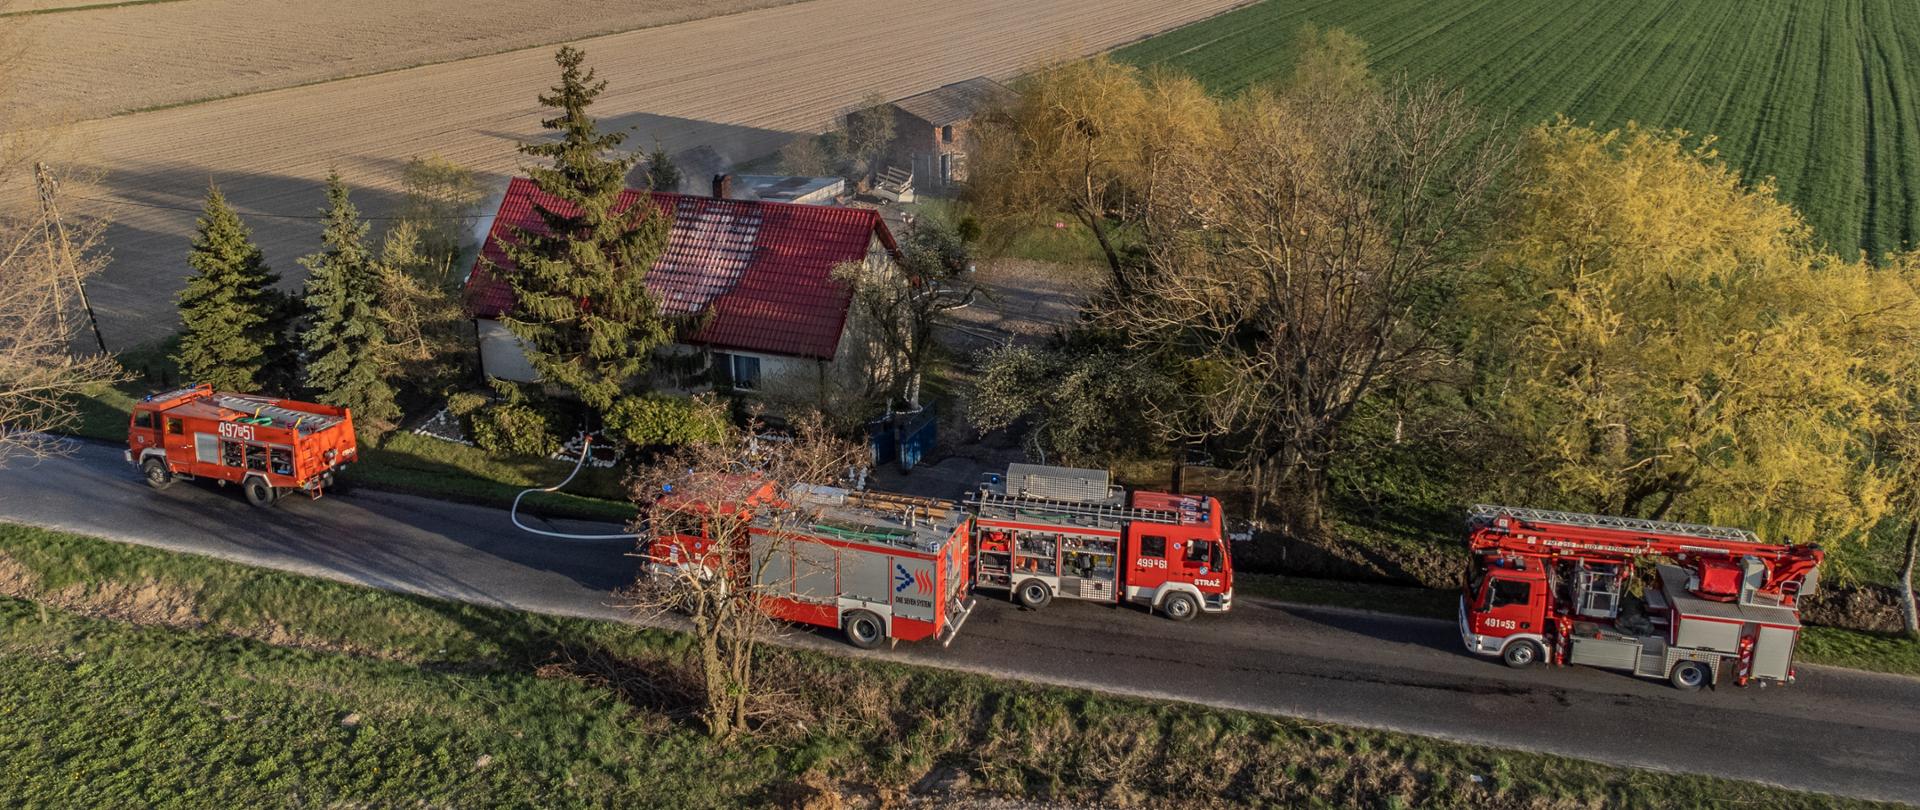 Na drodze przebiegającej w pobliżu budynku mieszkalnego stoją pojazdy pożarnicze. Nad dachem unosi się dym. W oddali widać strażaków prowadzących działania na terenie posesji. Pokrycie dachowe w miejscu pożaru zmieniło barwę. Zdjęcie wykonane z drona,